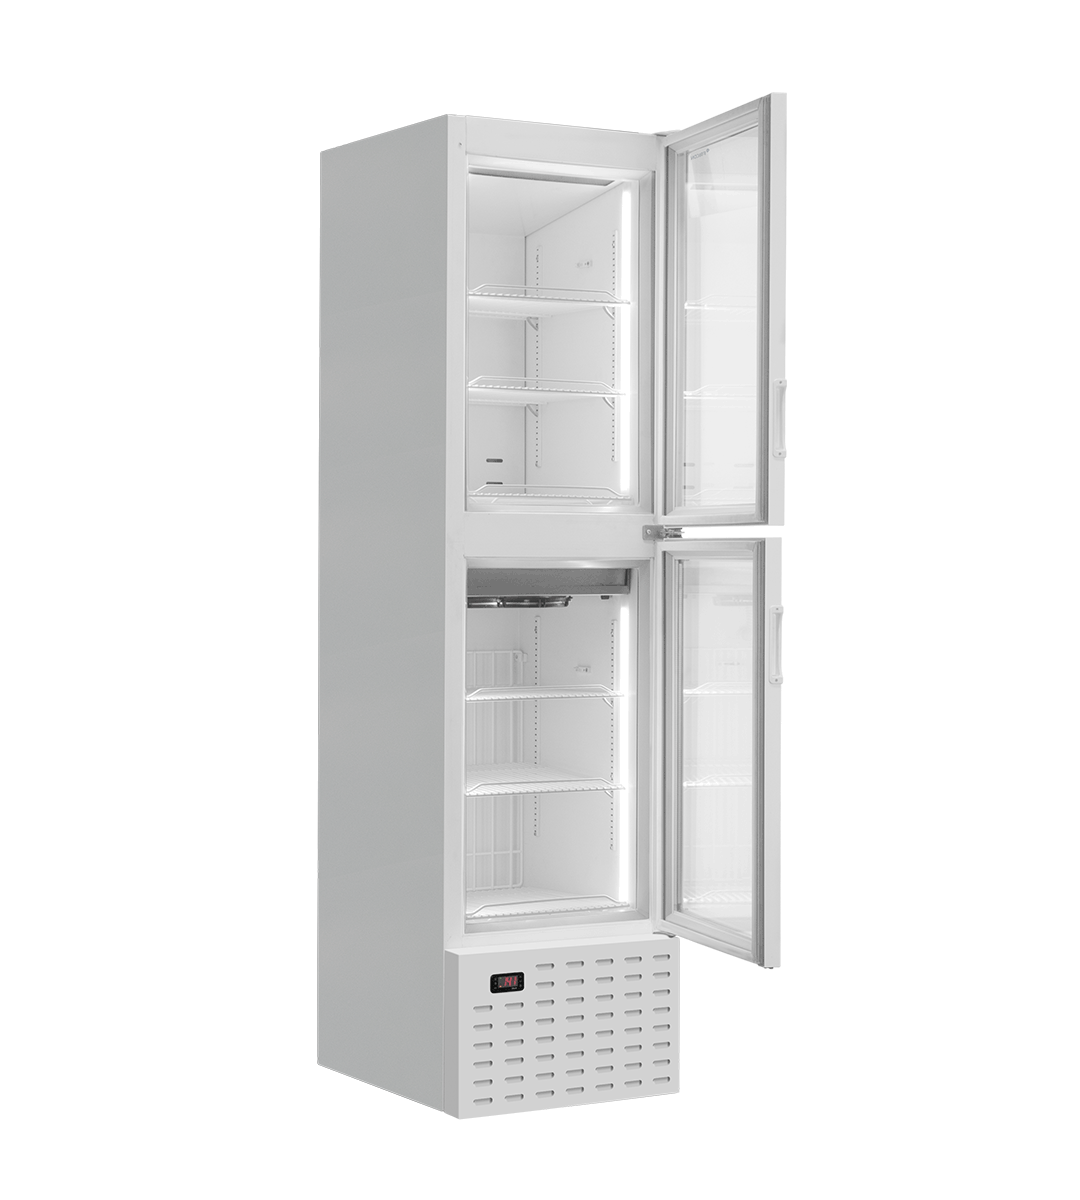 Display Refrigerator DUO (VDTT)